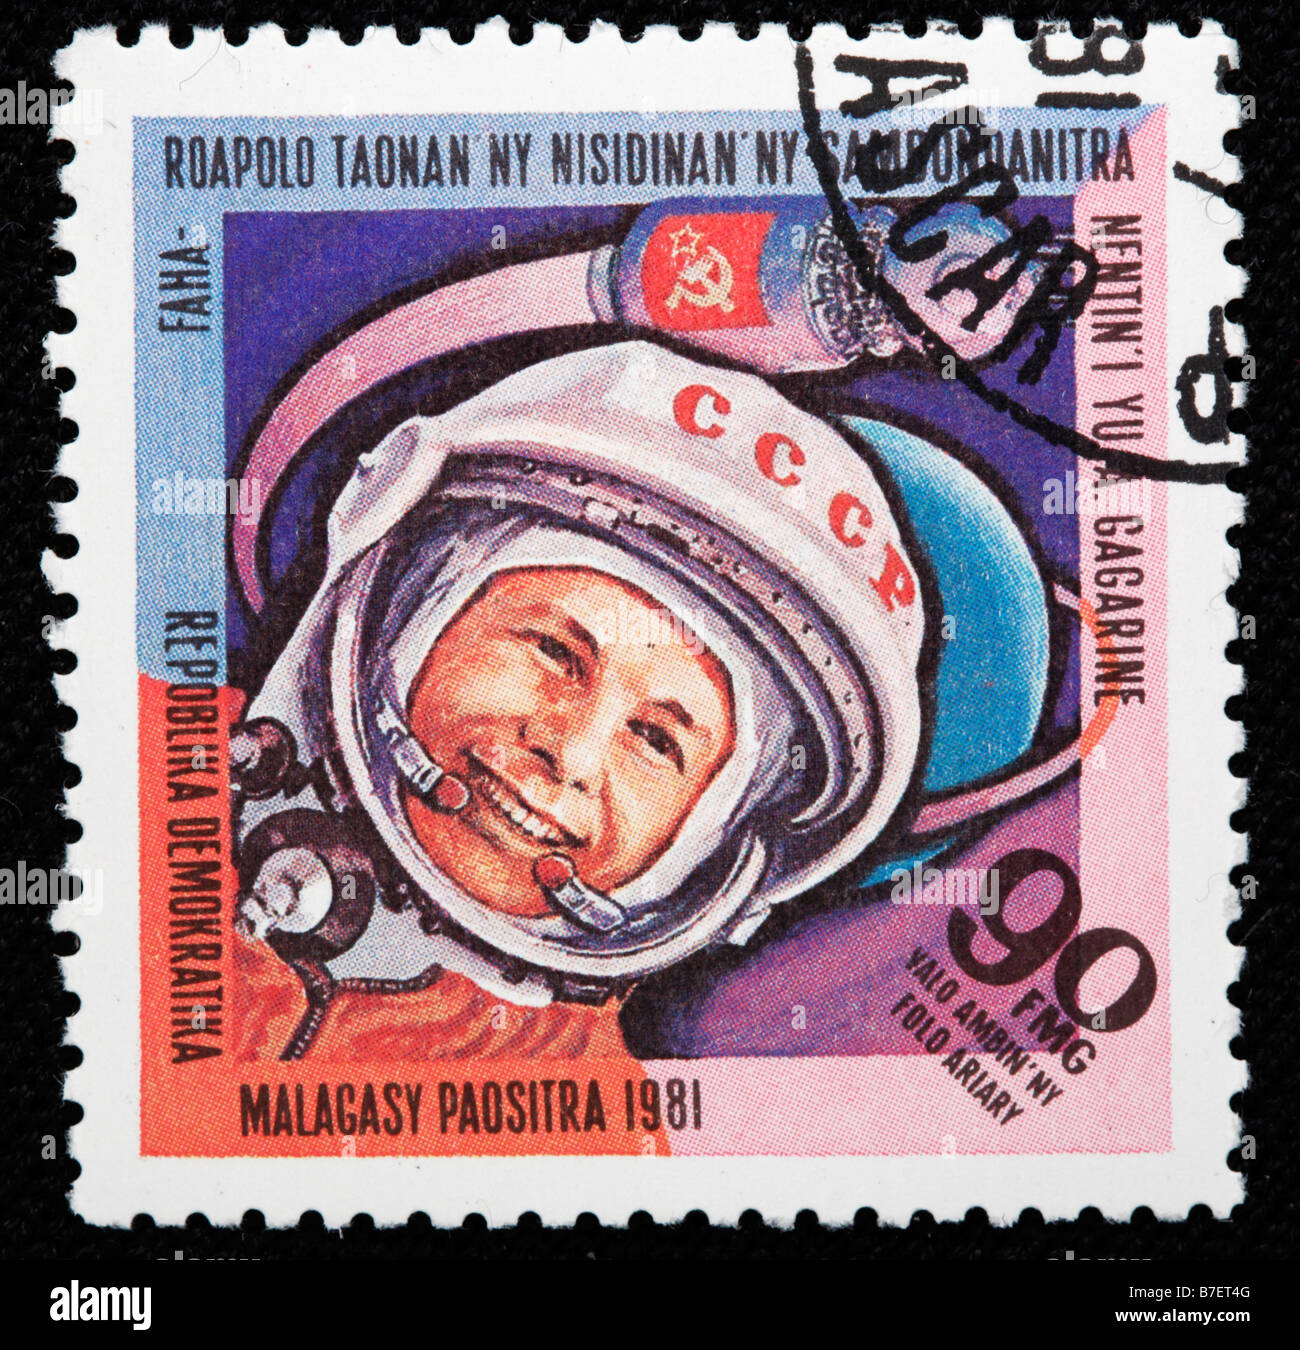 Erster Flug in den Weltraum von Yuri Gagarin, Briefmarke, Madagassen, 1981 Stockfoto